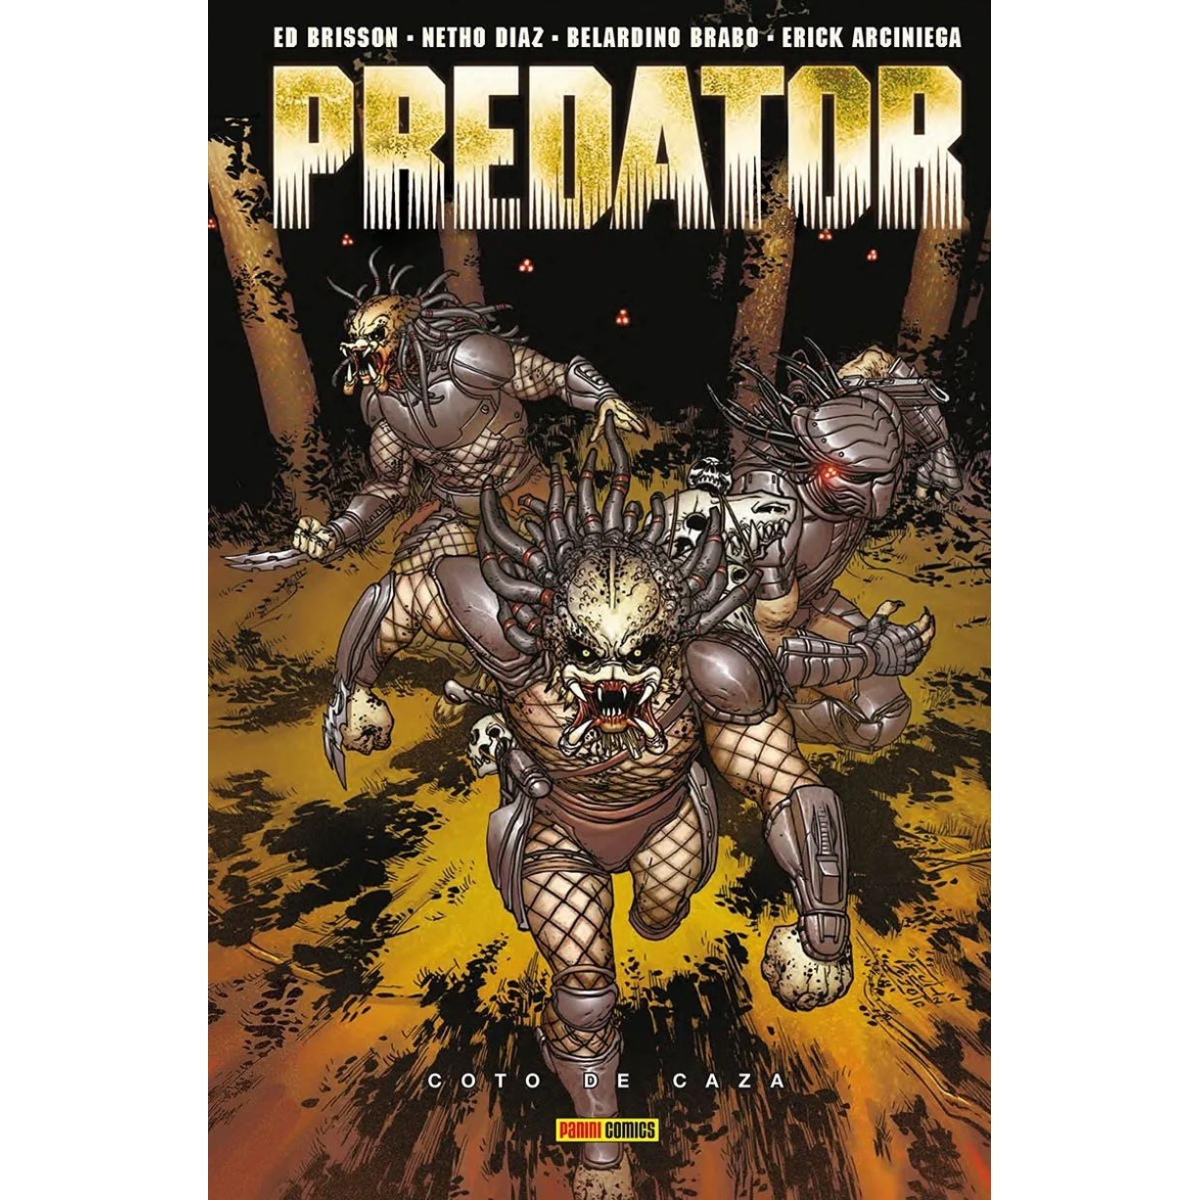 Predator 02 Coto de Caza